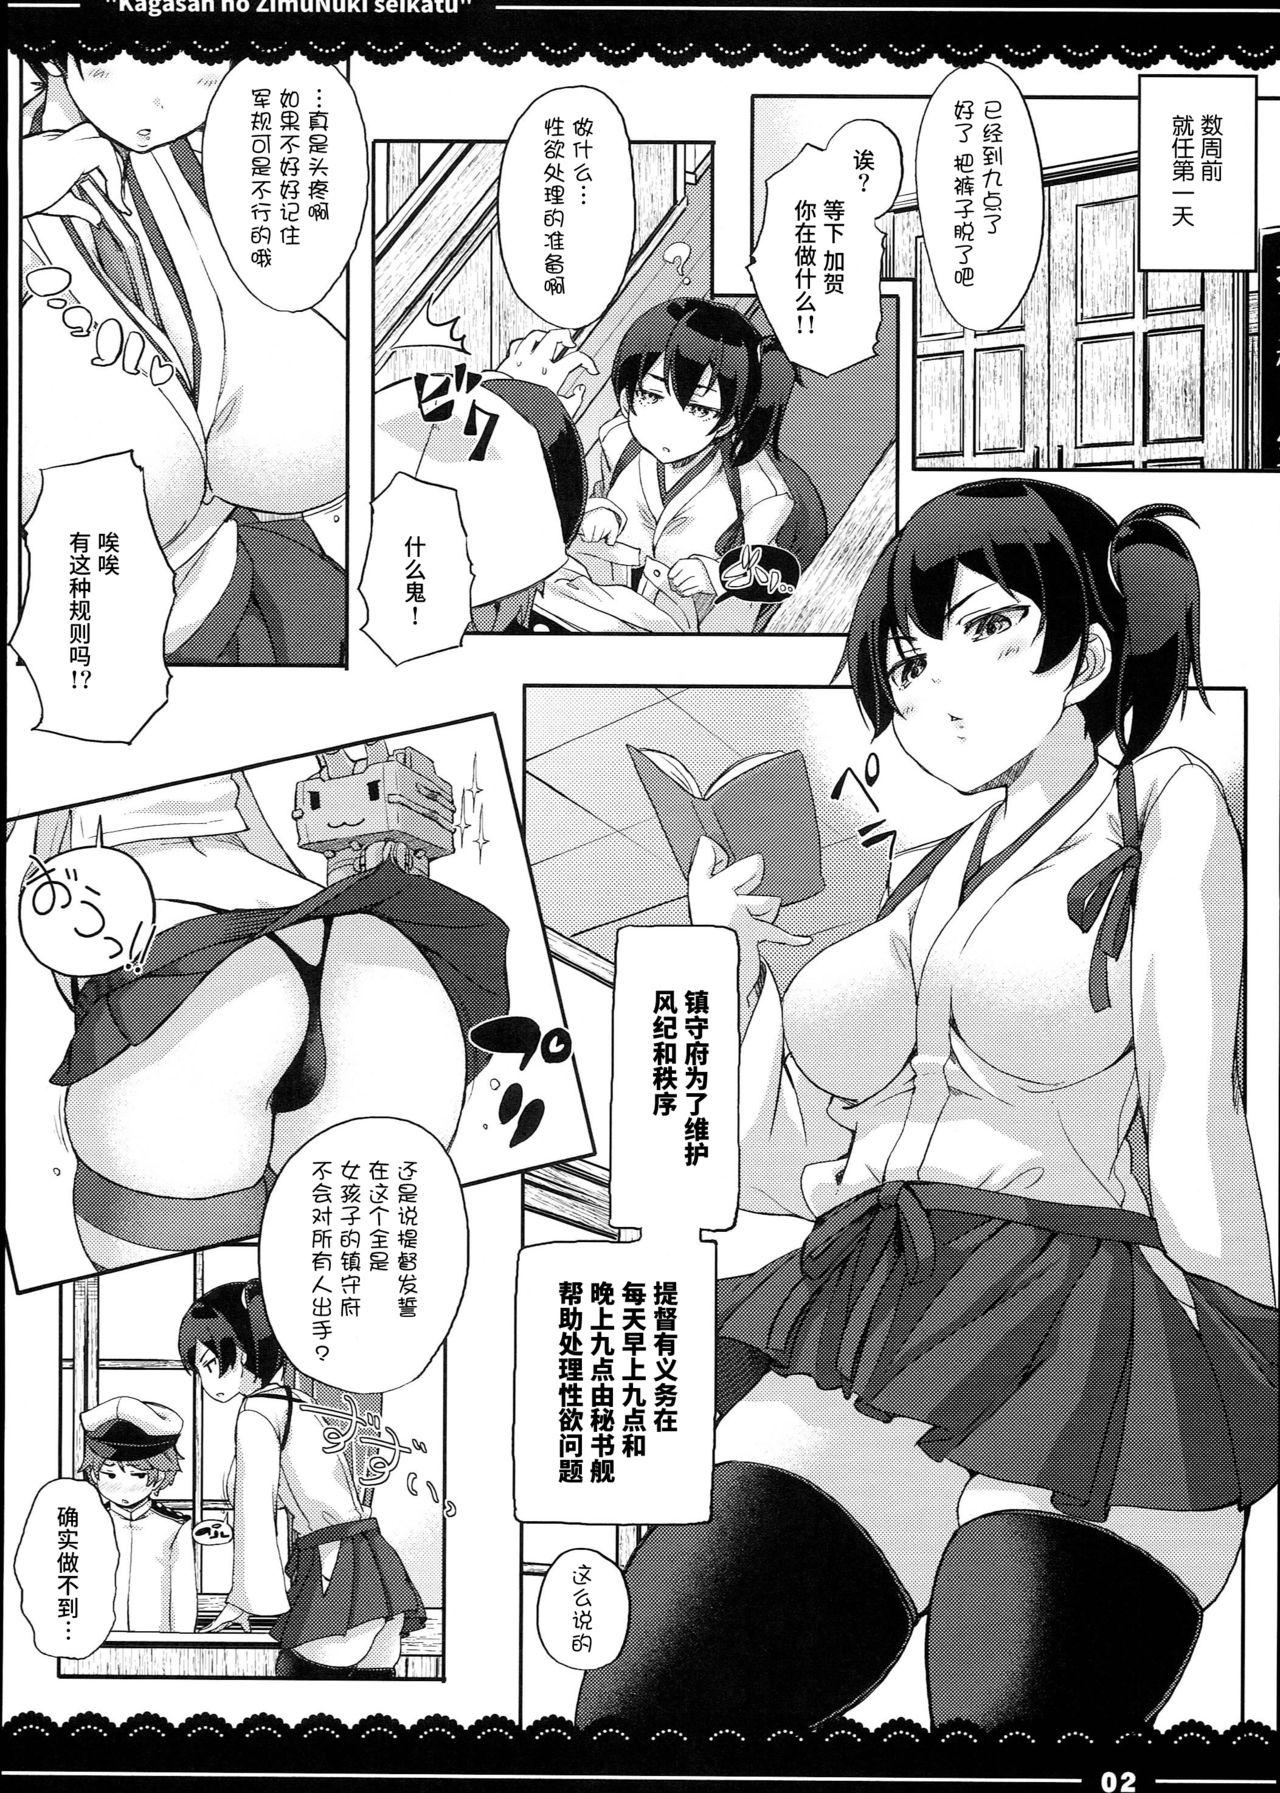 Soft Kaga-san no Jimunuki Seikatsu - Kantai collection Hotporn - Page 4